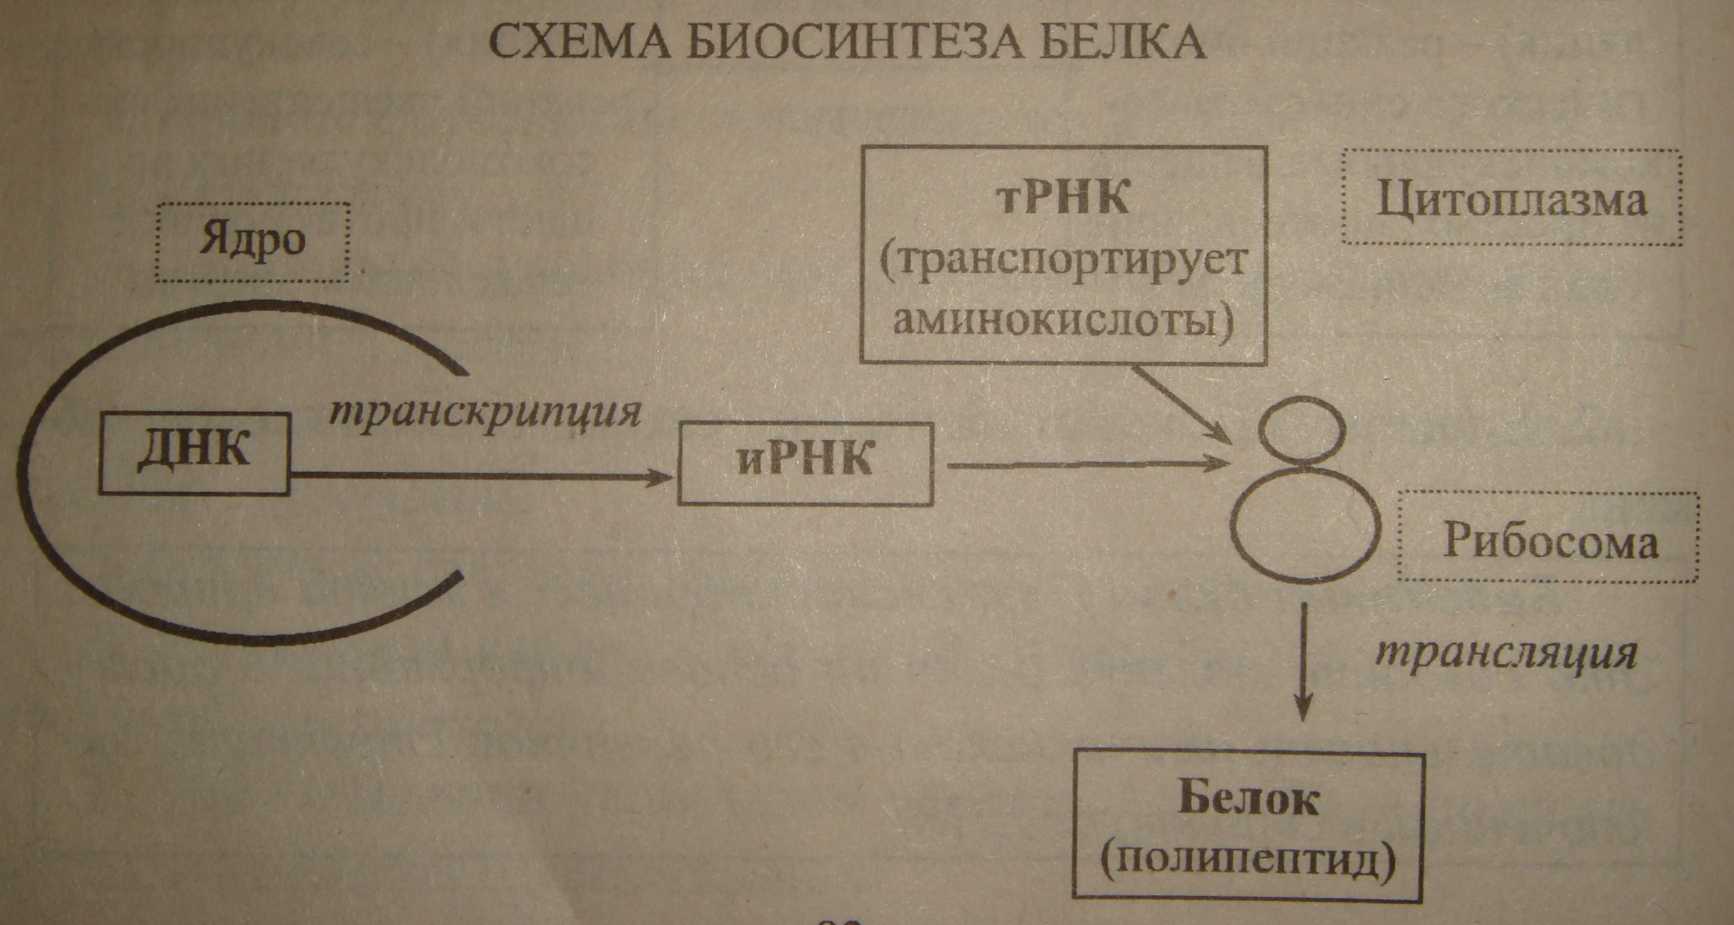 Биосинтез 3 этапа. Этапы процесса биосинтеза белка. Общая схема биосинтеза белка схема. Процесс синтеза белка этапы. Этапы синтеза белка схема.